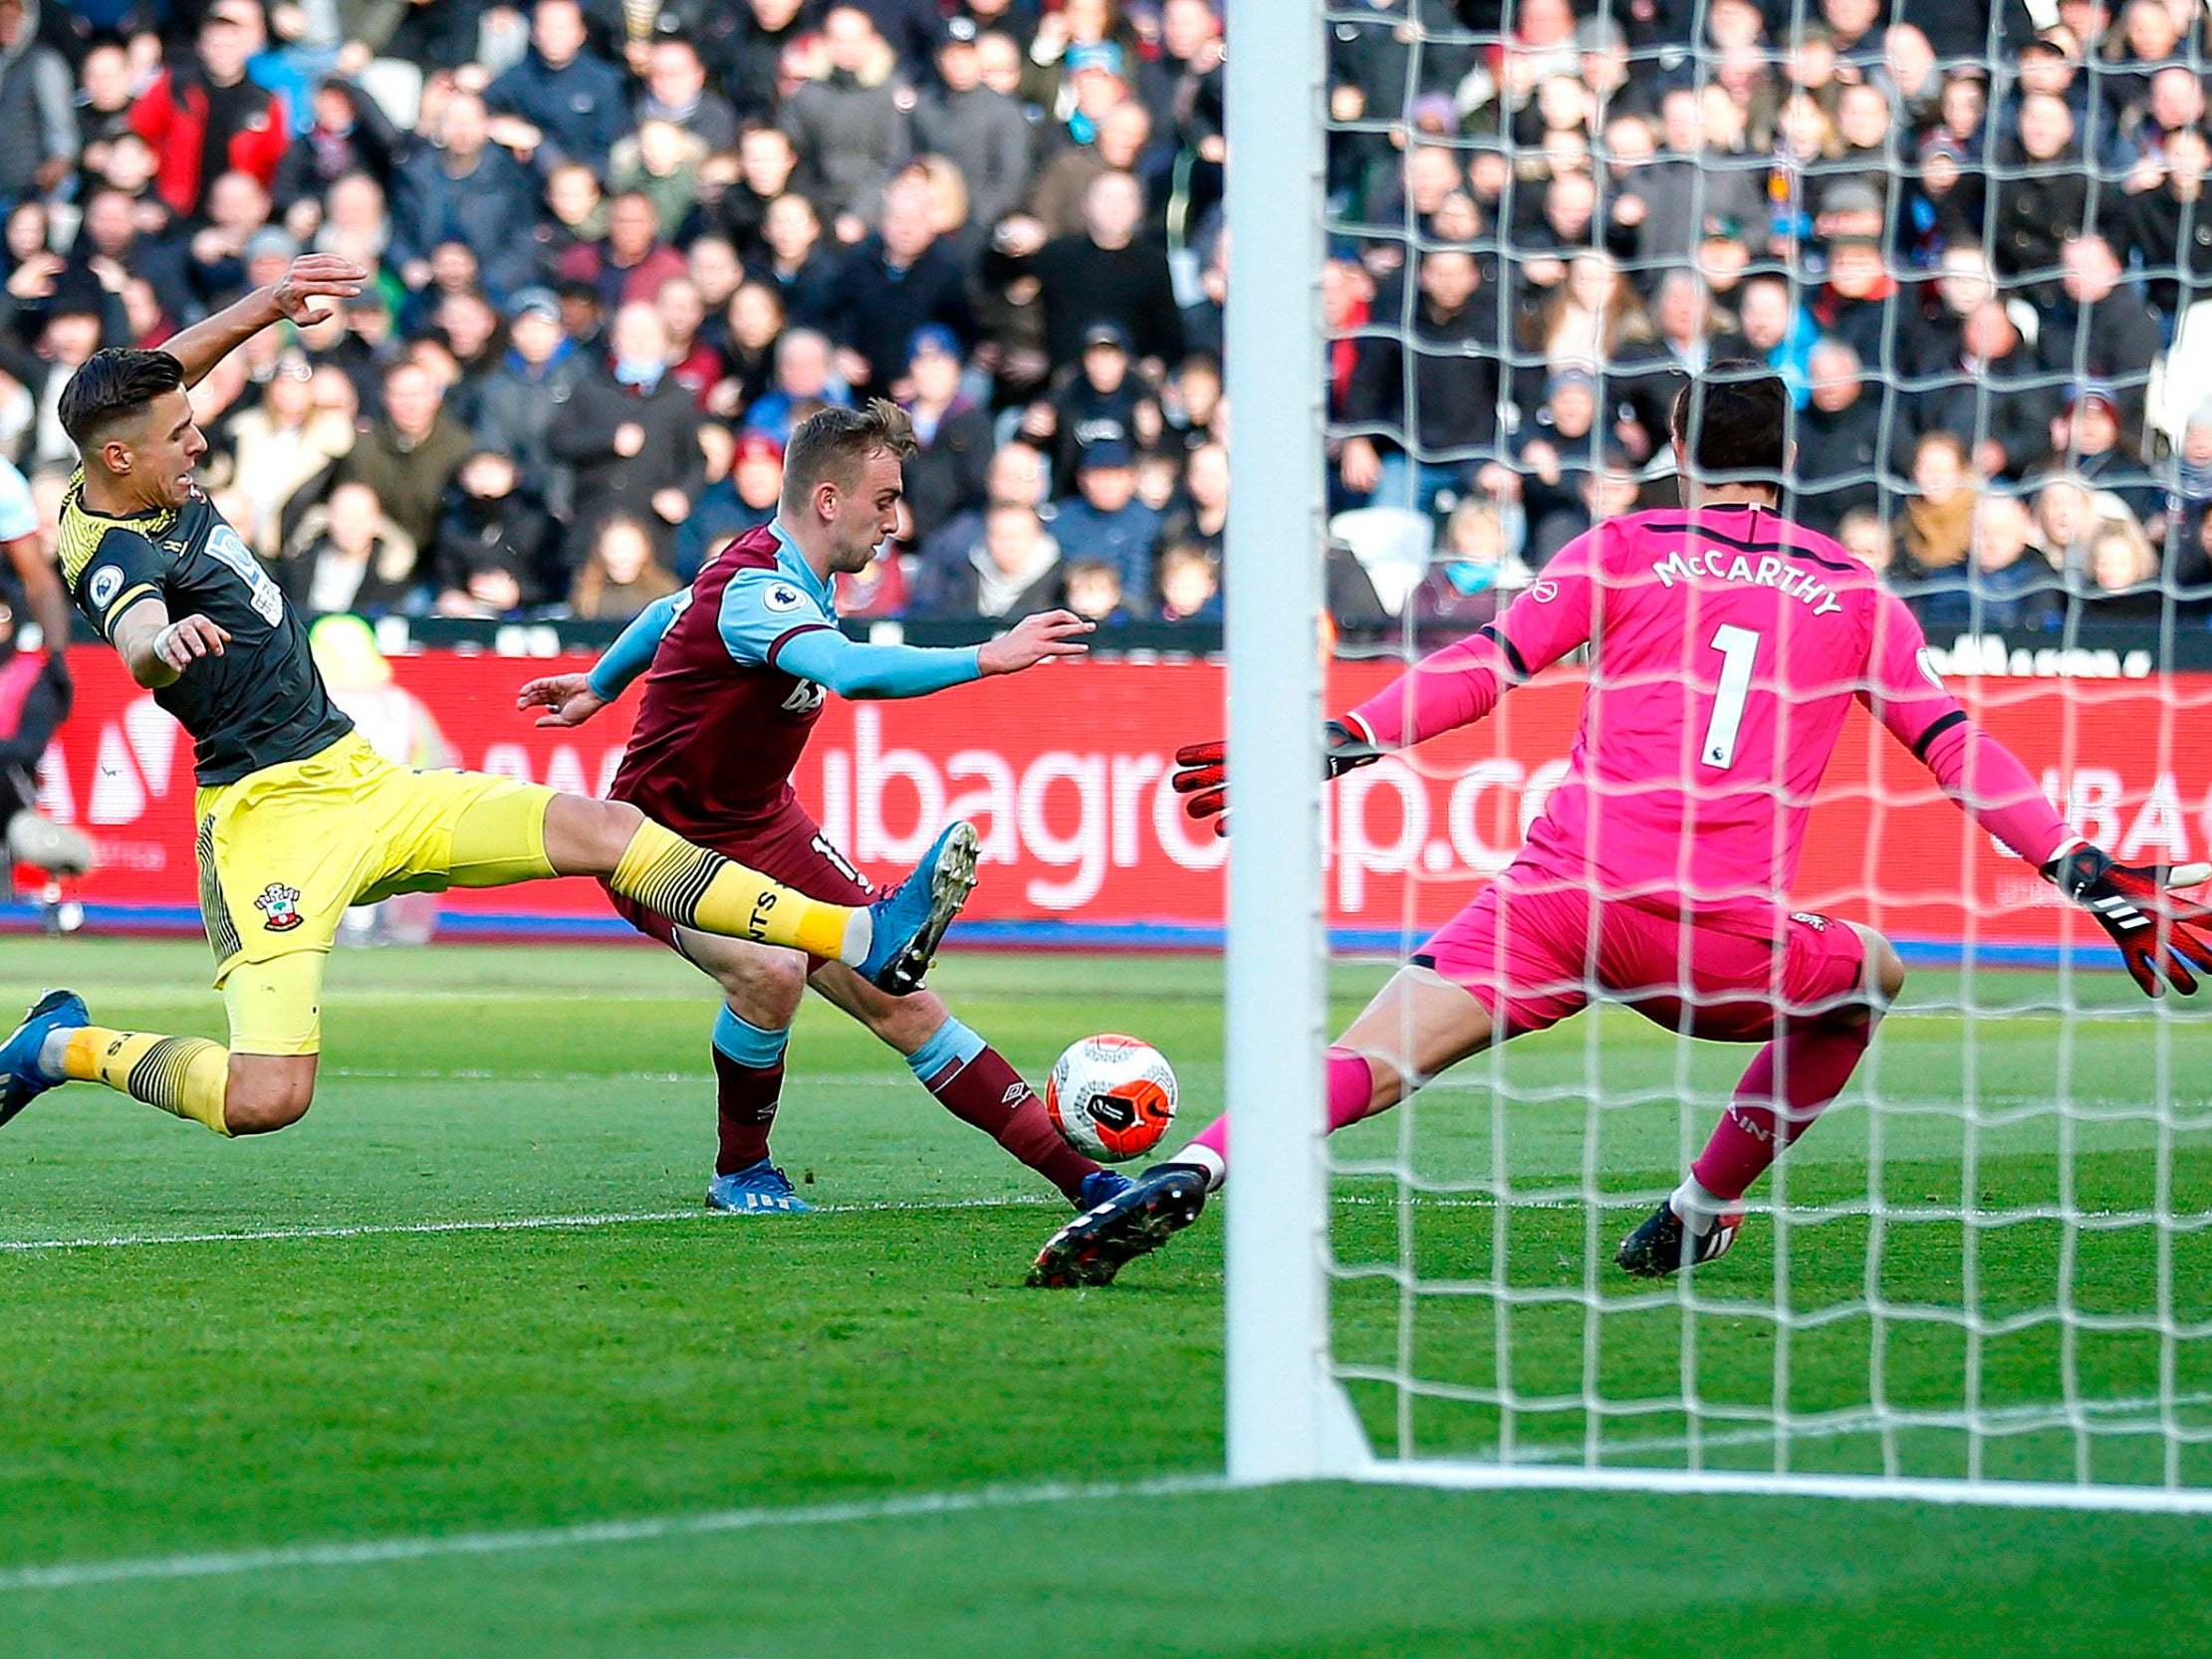 Jarrod Bowen scores his first goal for West Ham